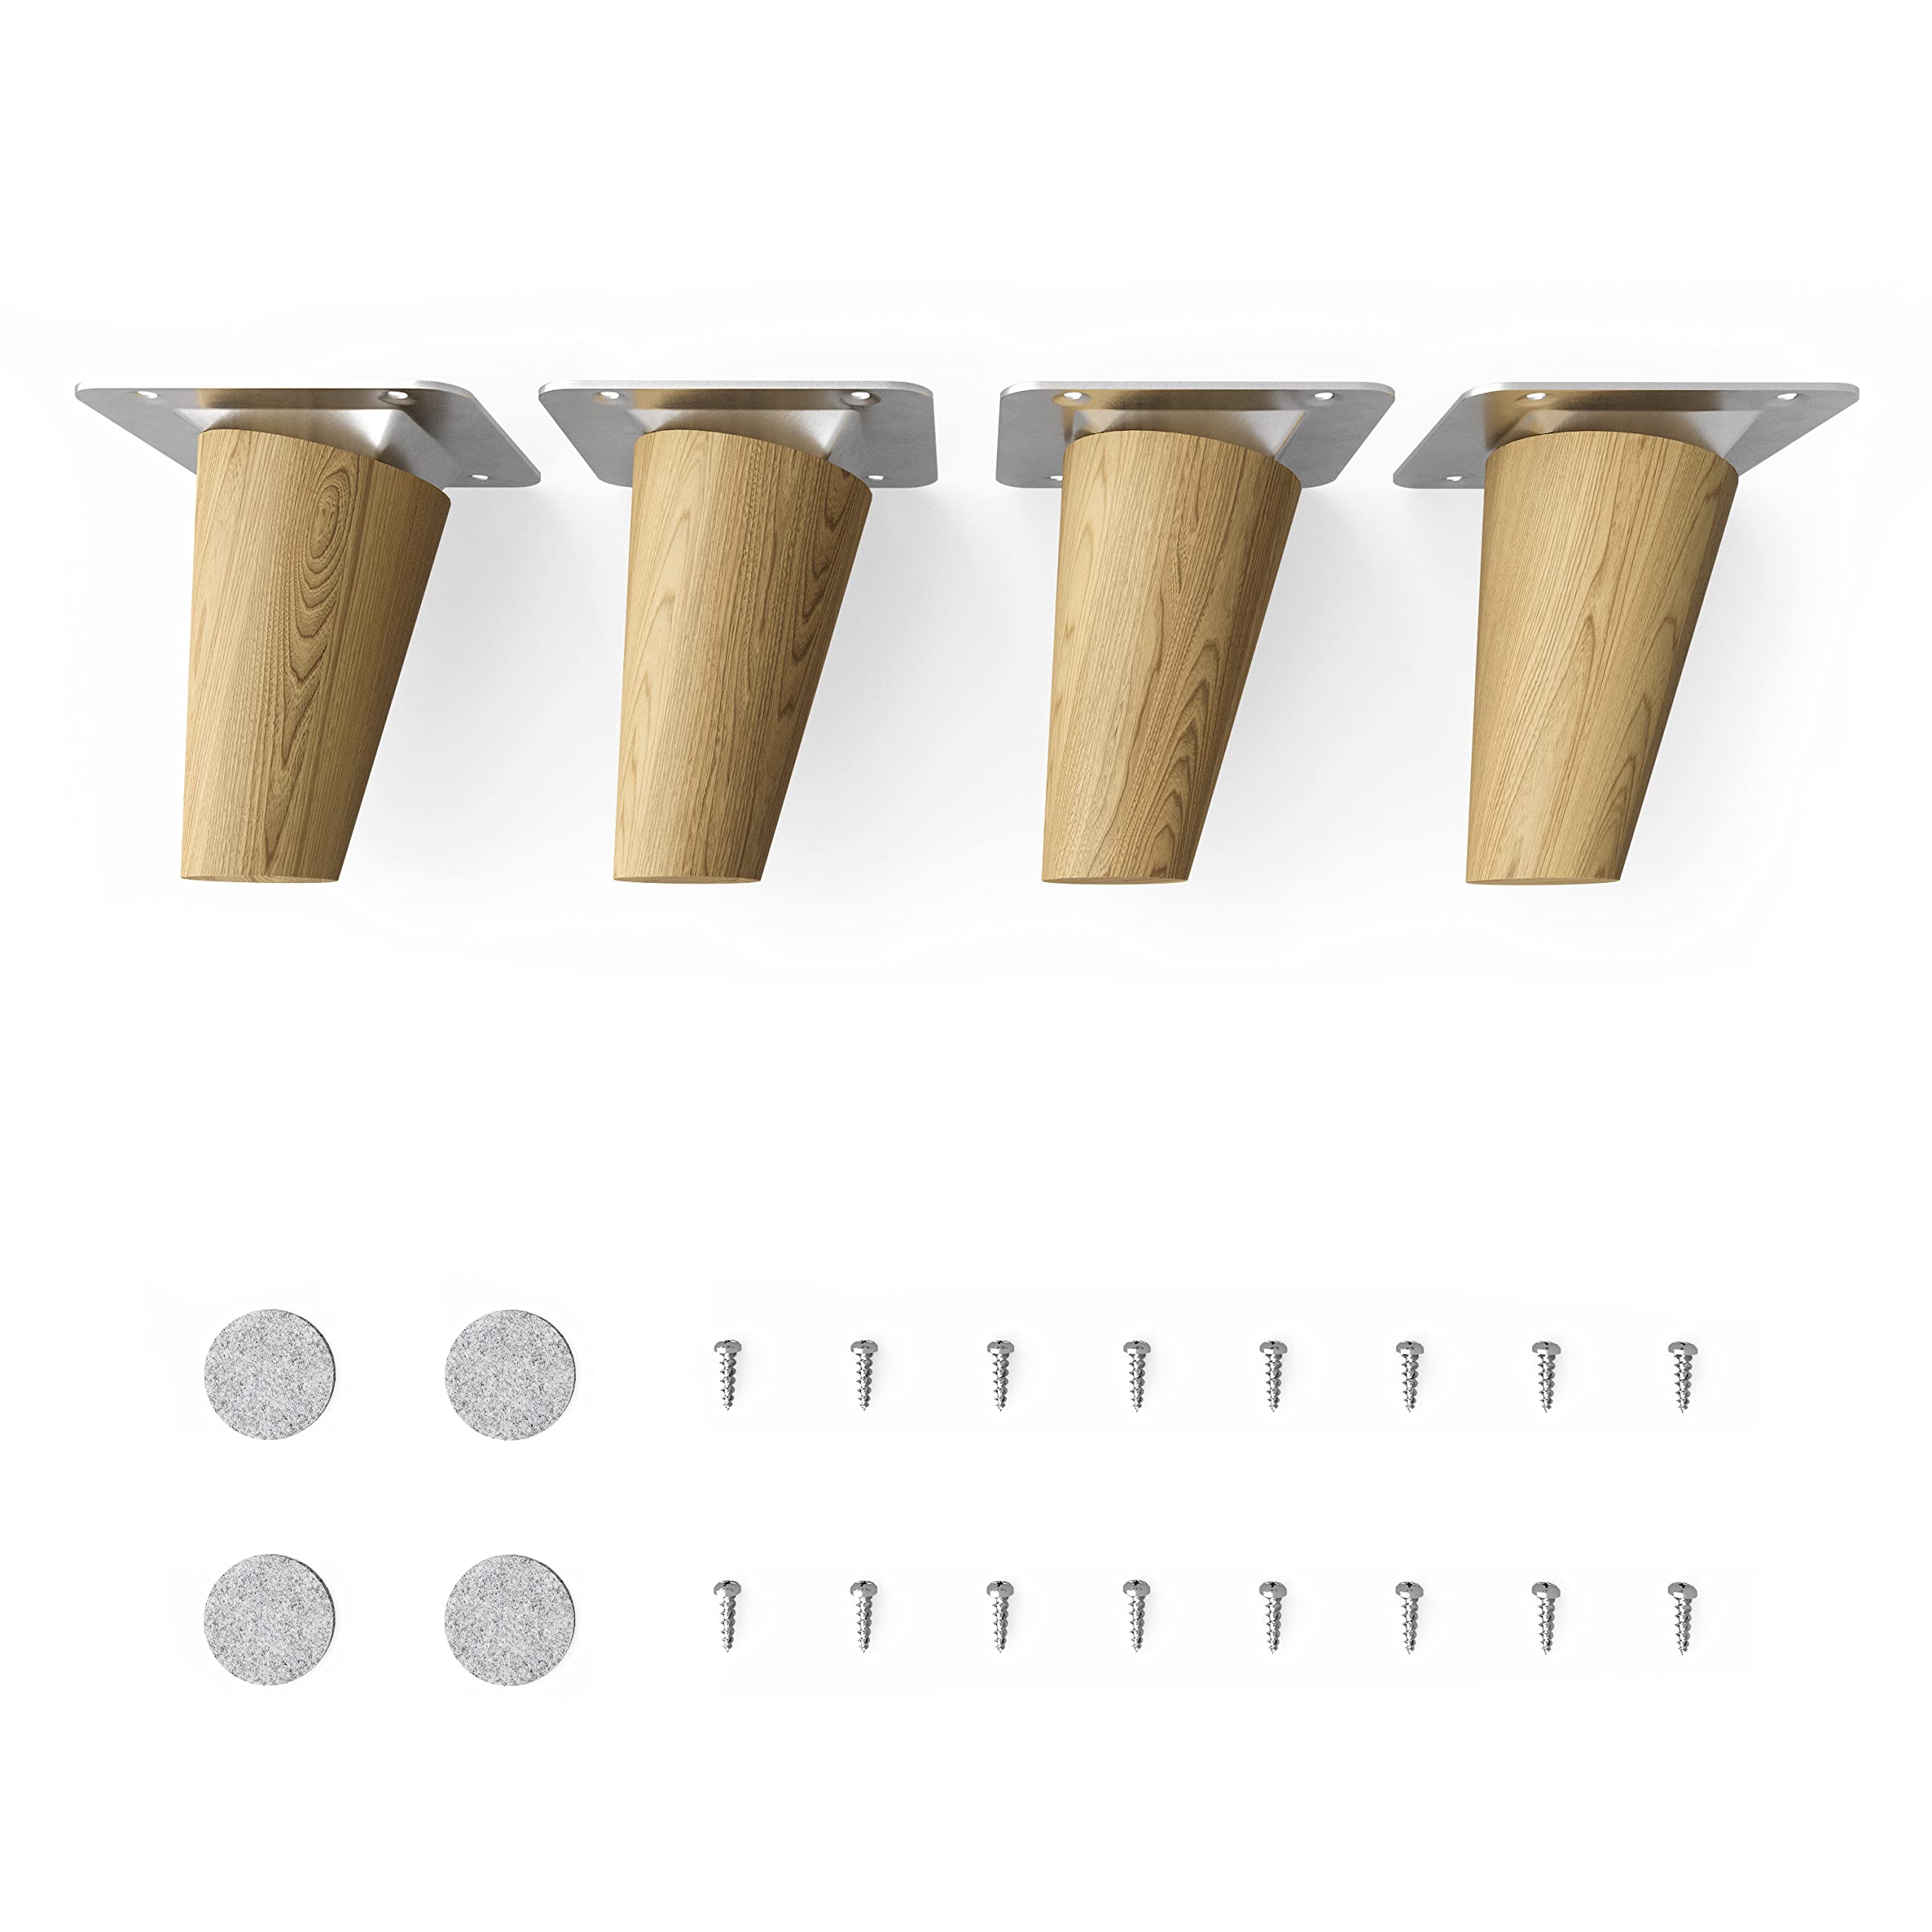 Sossai® Holz-Tischbeine - Clif Round | Öl-Finish | Höhe: 8 cm | HMF2 | rund, konisch (schräge Ausführung) | Material: Massivholz (Eiche) | für Tische, Beistelltische, Schminktische